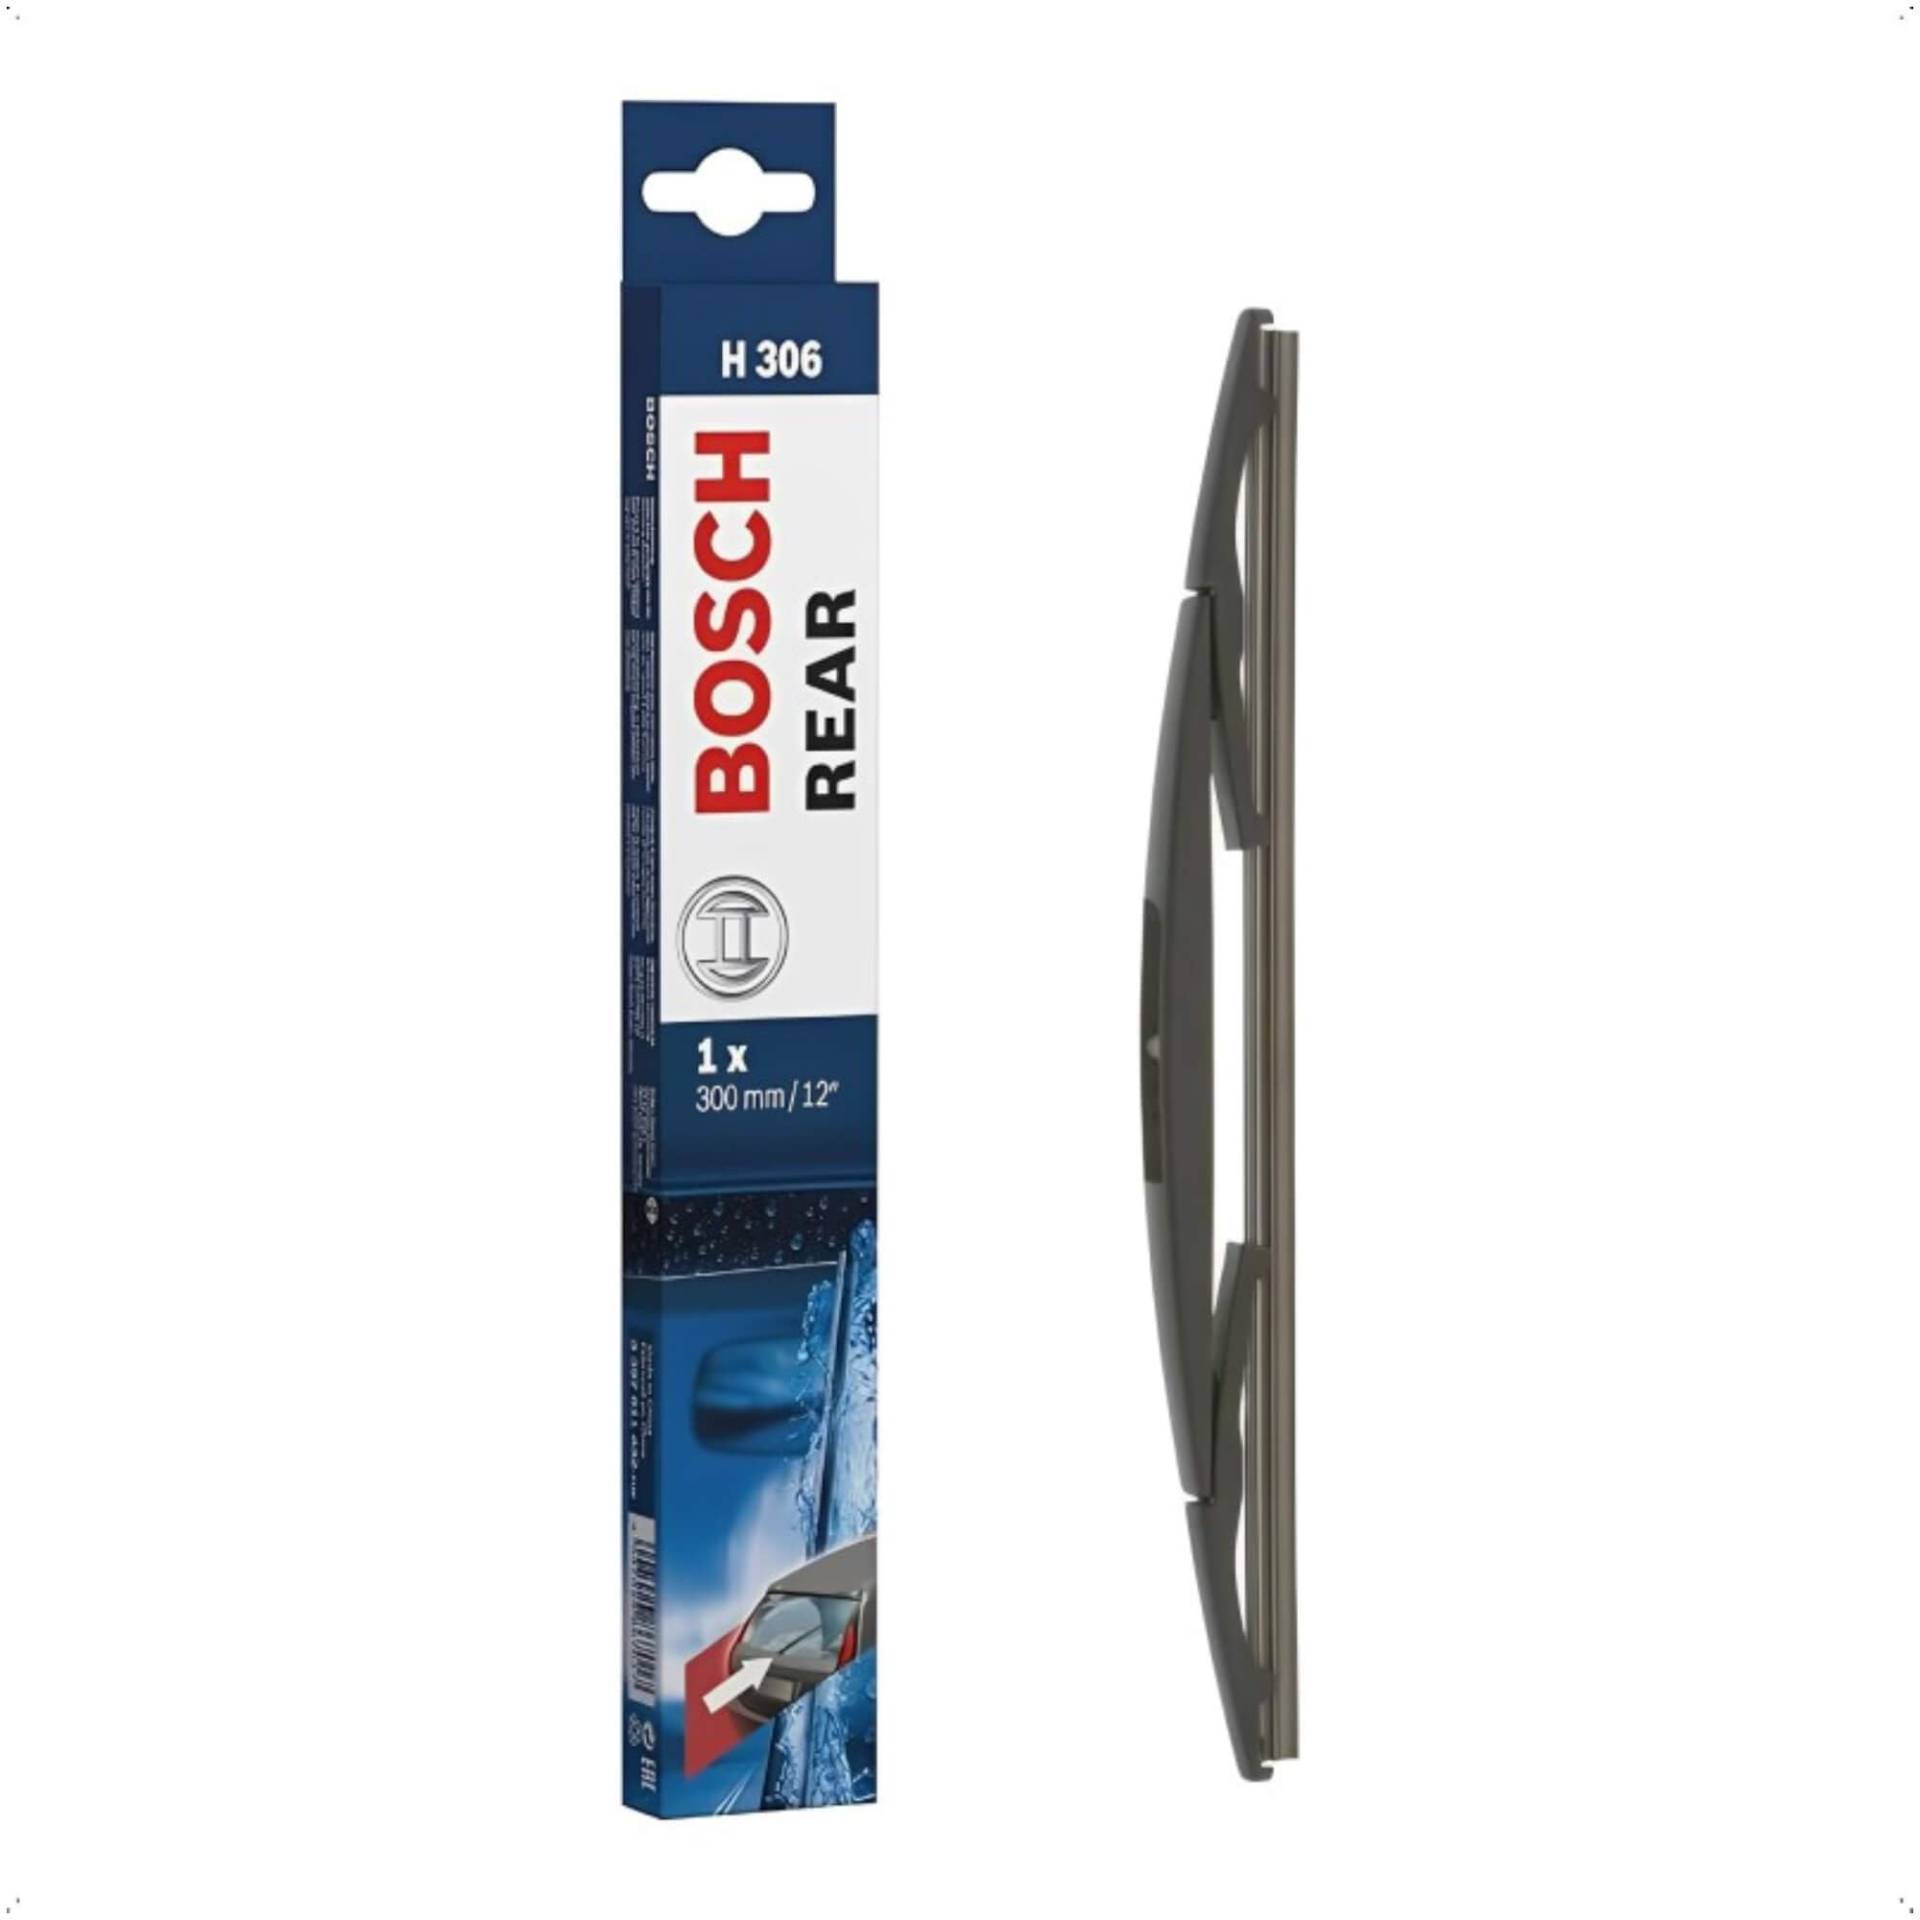 Bosch Scheibenwischer Rear H306, Länge: 300mm – Scheibenwischer für Heckscheibe von Bosch Automotive